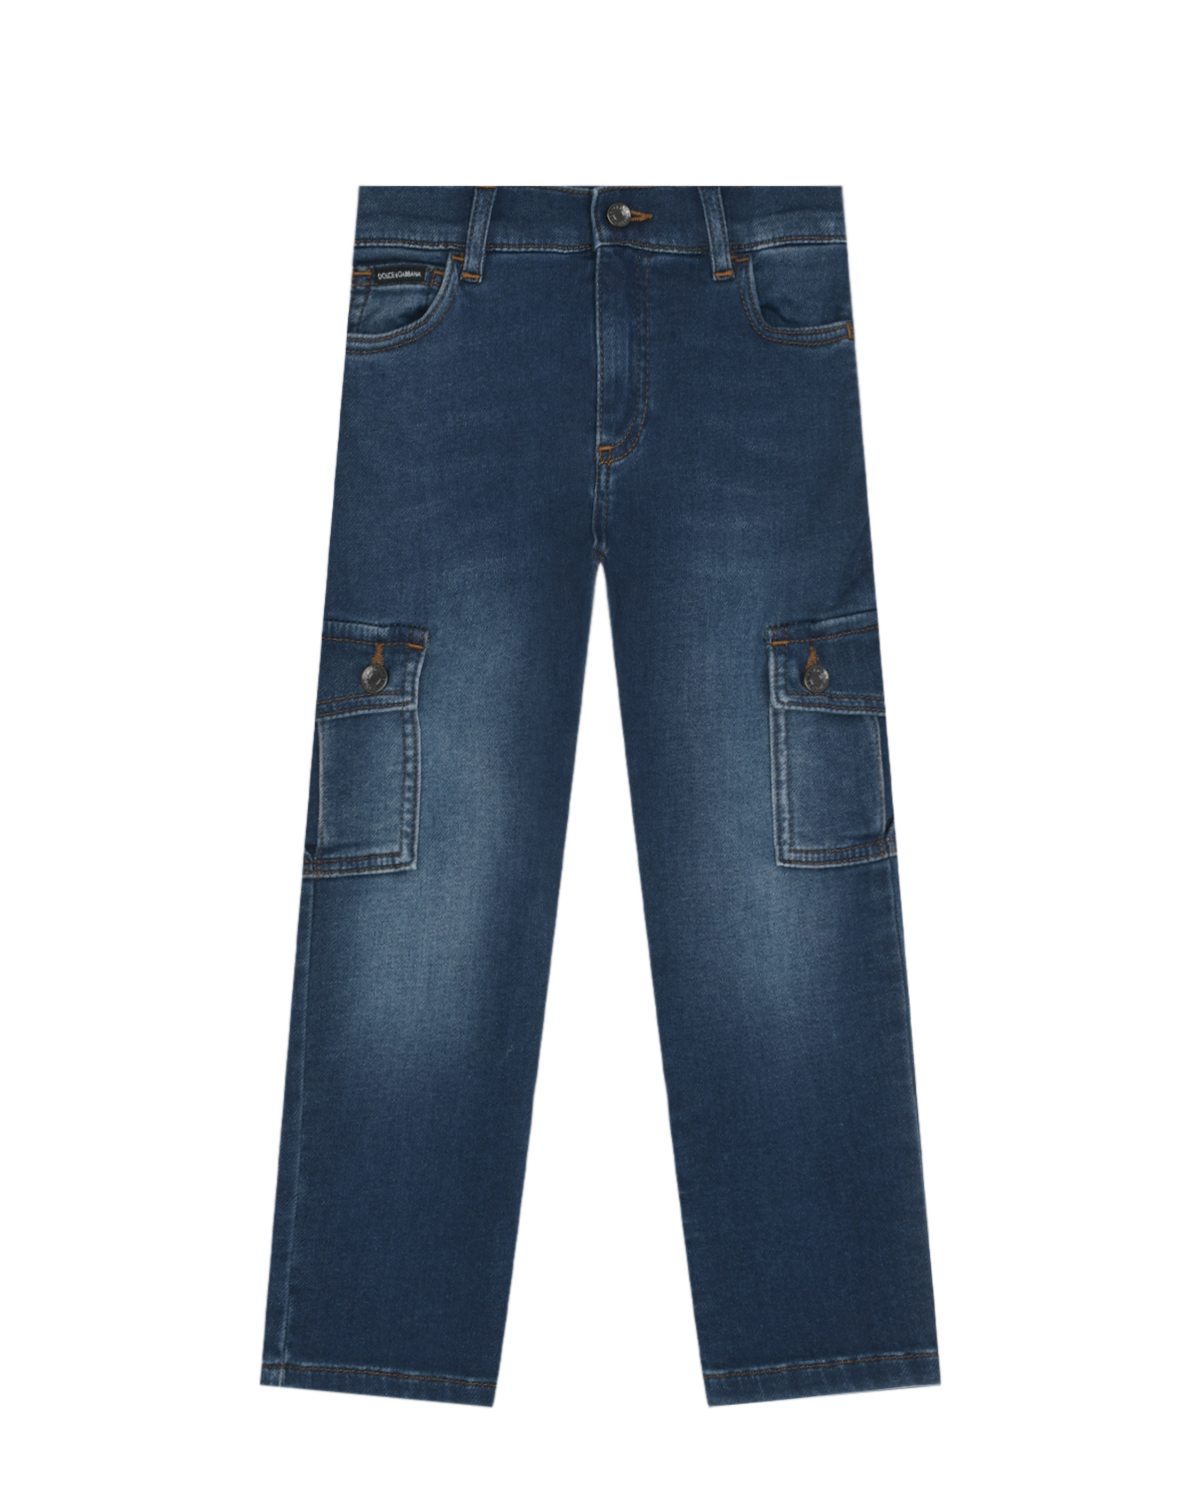 Синие джинсы с карманами карго Dolce&Gabbana синие базовые джинсы dolce